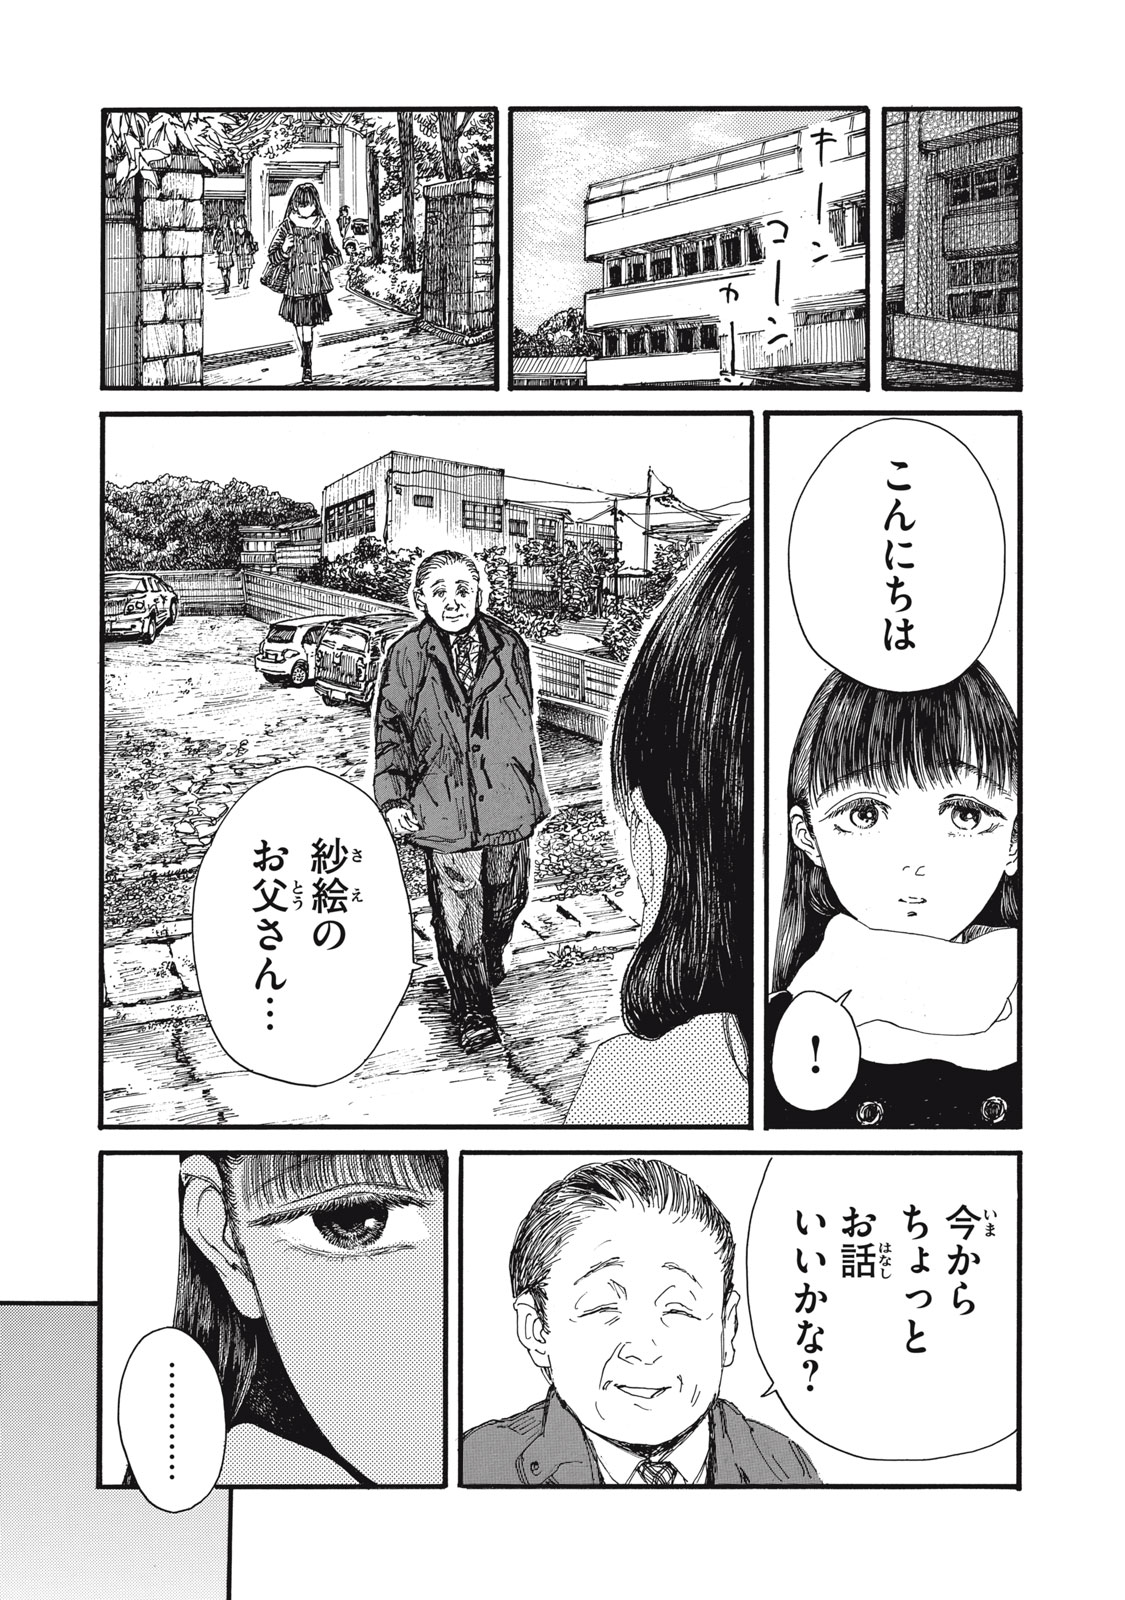 Watashi no Hara no Naka no Bakemono - Chapter 39 - Page 13